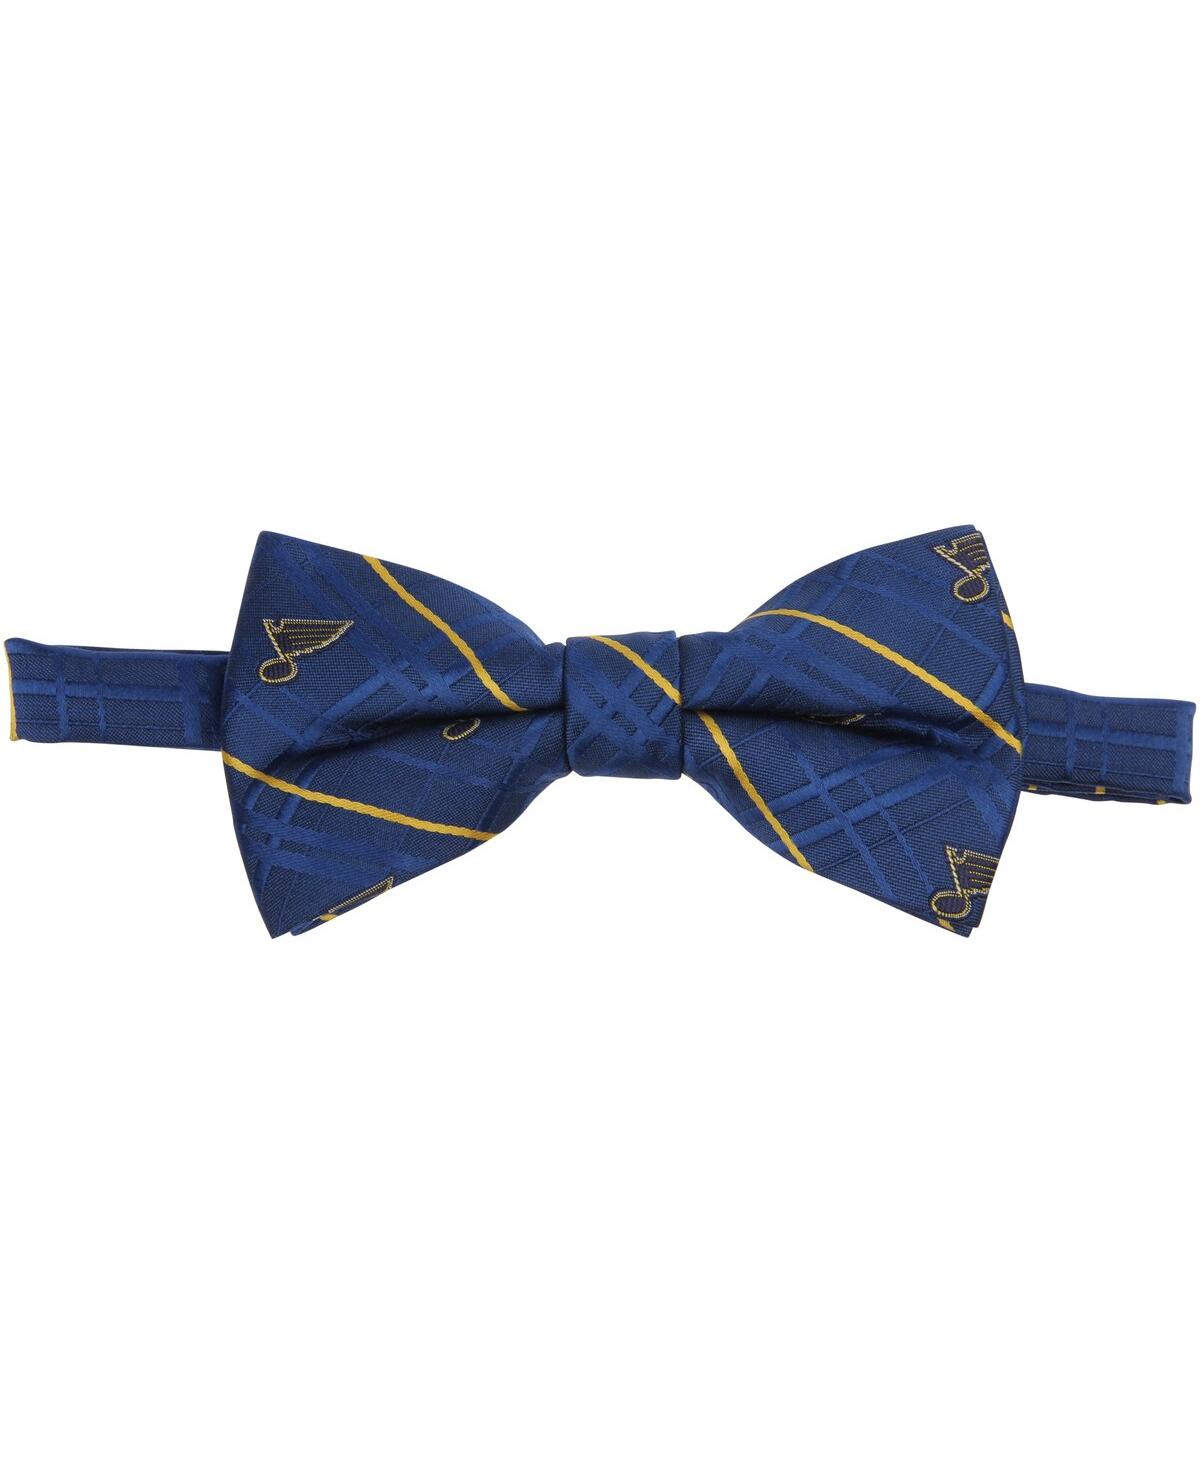 Men's Royal St. Louis Blues Oxford Bow Tie - Royal